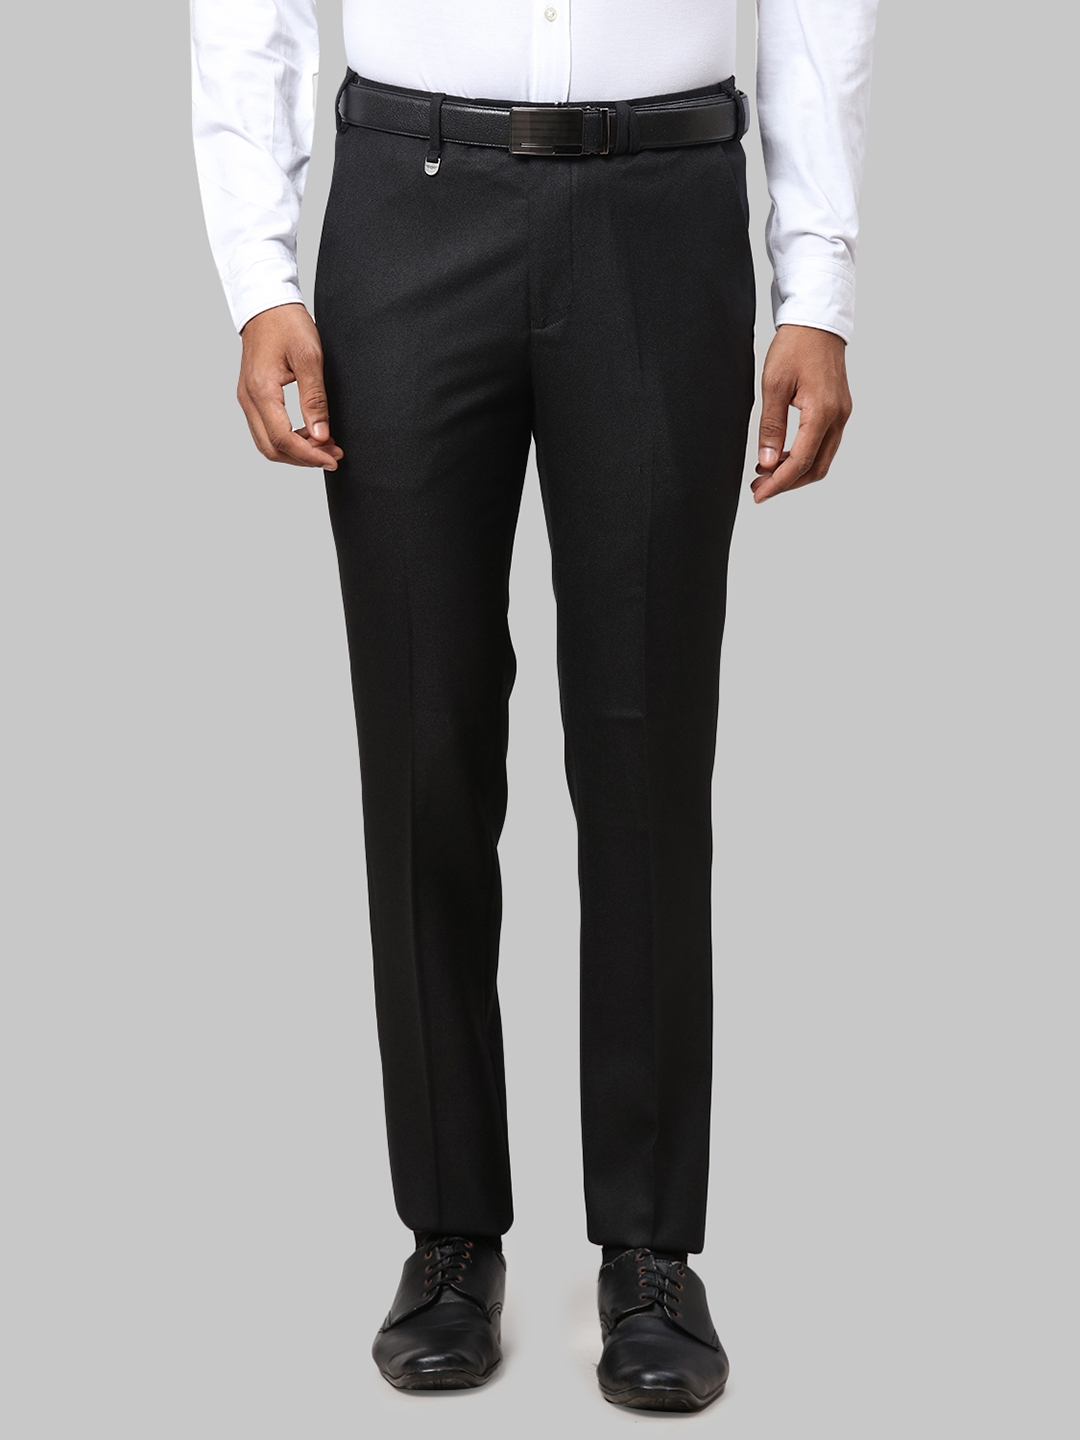 Buy PARK AVENUE Men's Regular Trouser (PMTX07267-F3_Beige at Amazon.in